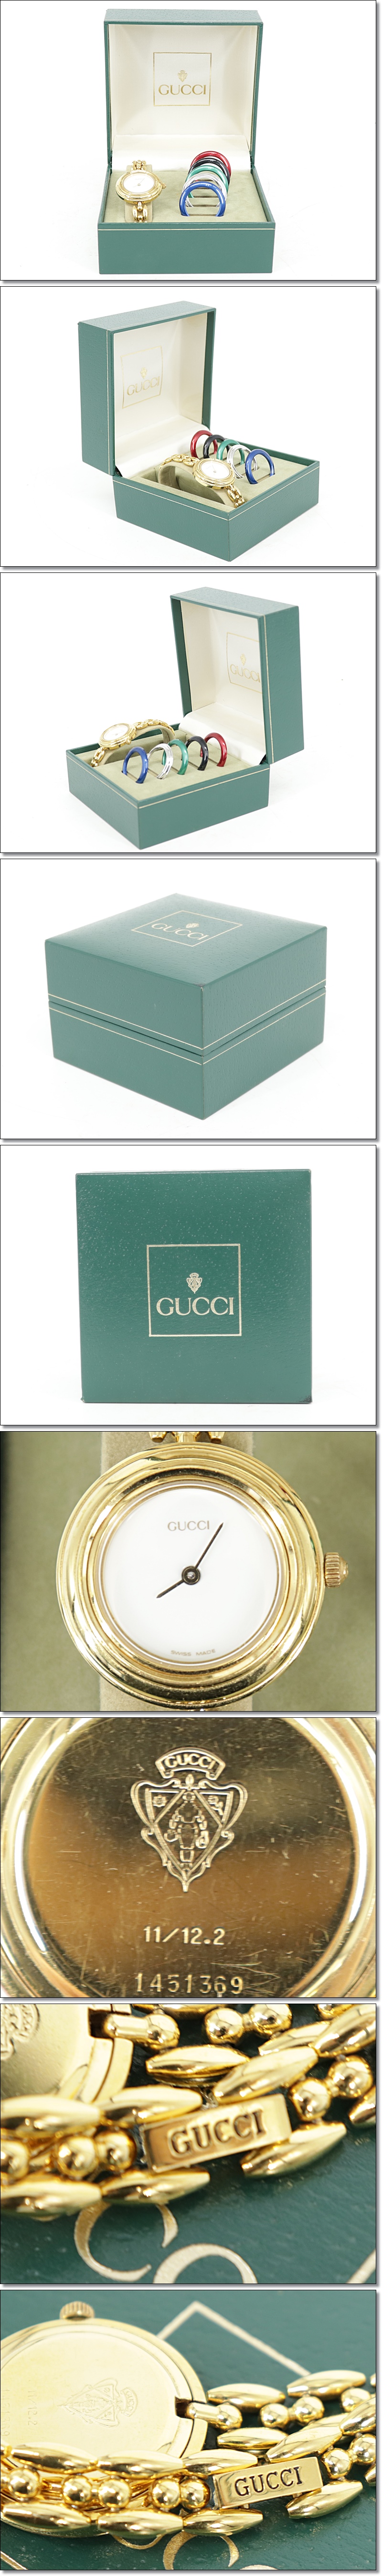 爆買い通販GUCCI グッチ チェンジベゼル レディース腕時計 クォーツ GP 本物保証 S598 女性用